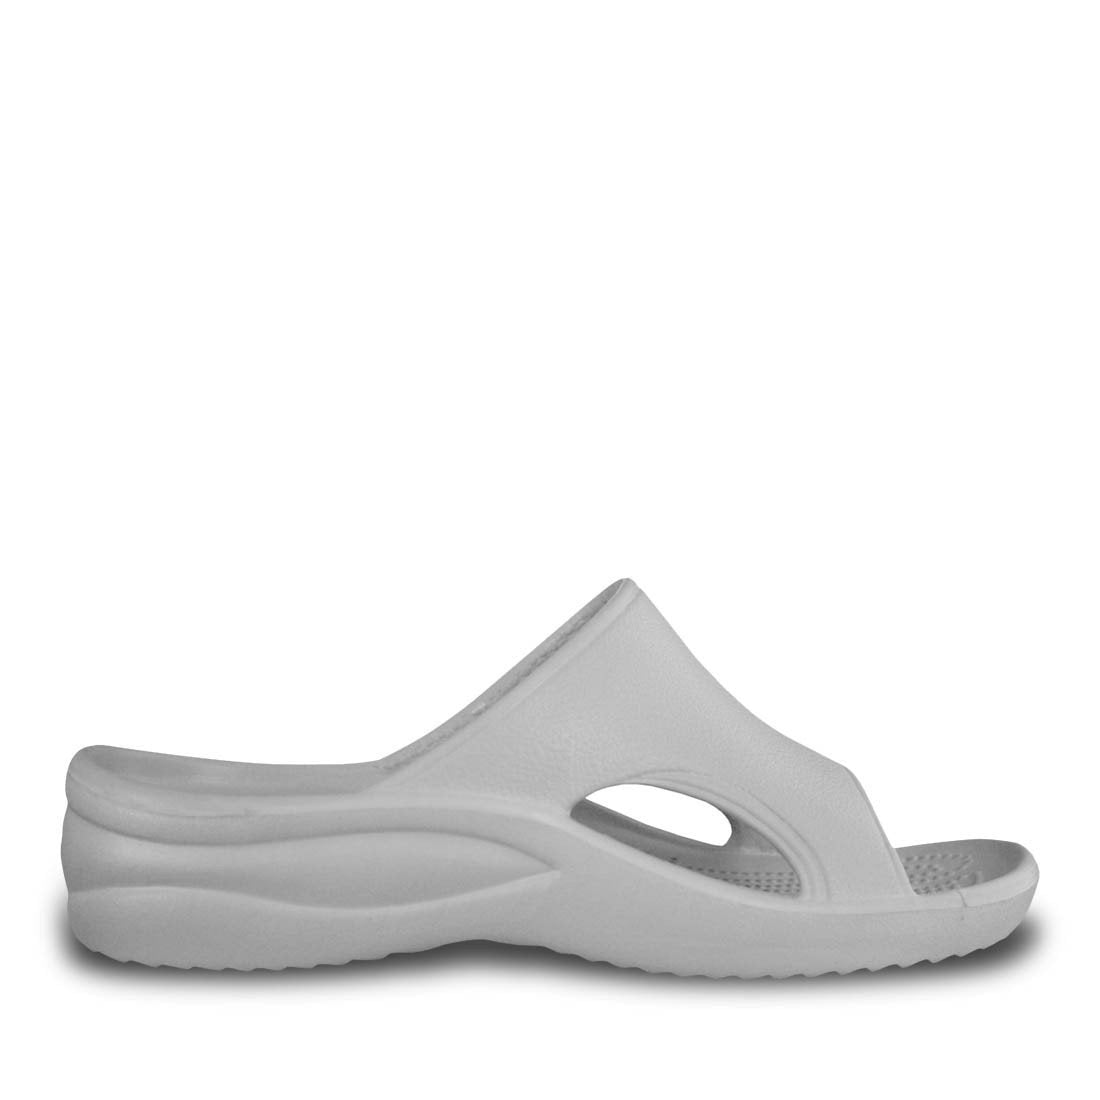 Dawgs Women's Flip Flops - White